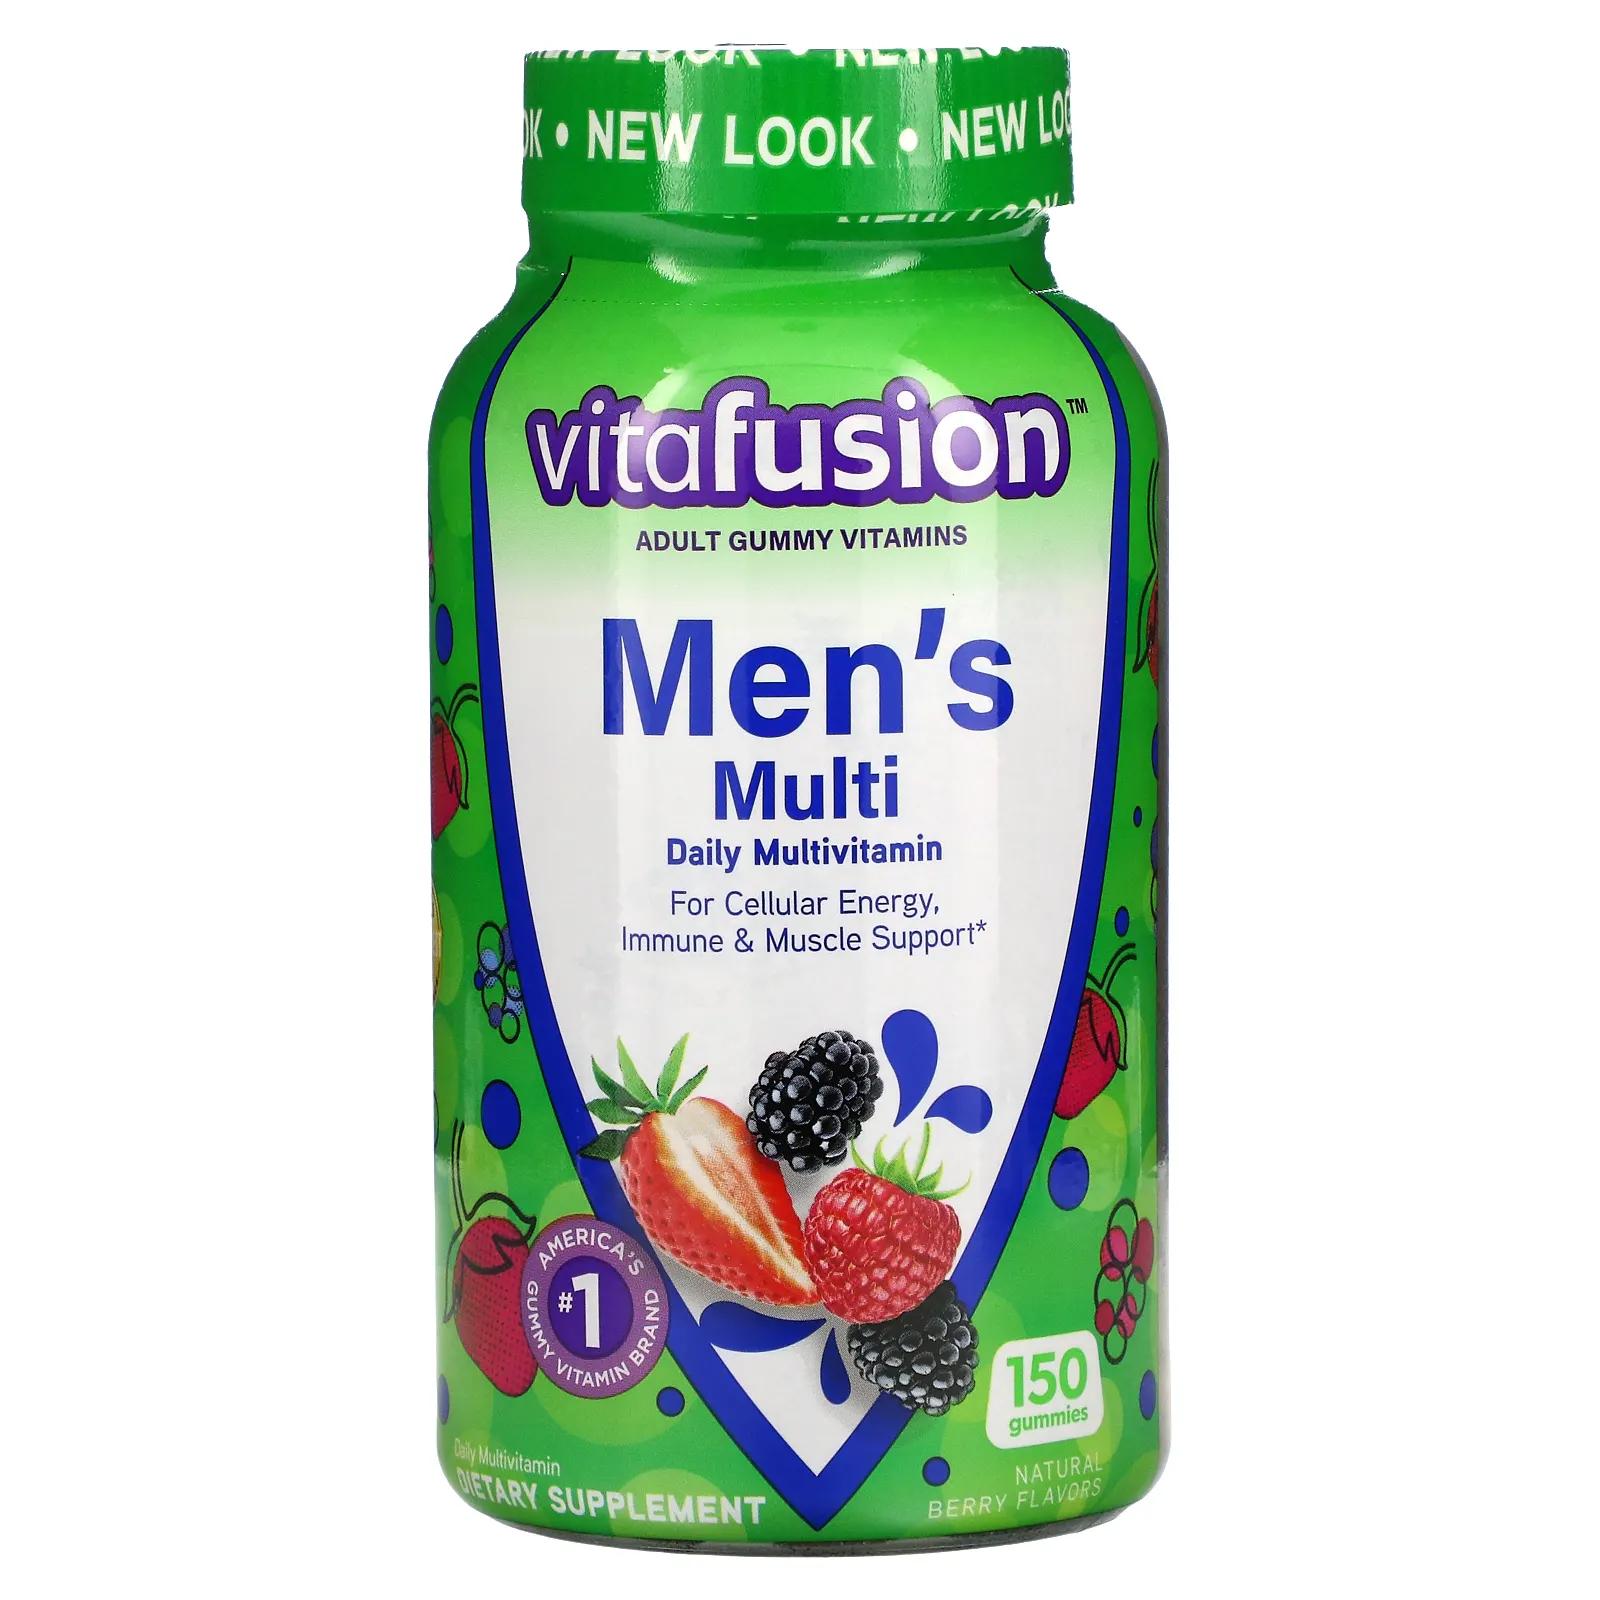 VitaFusion Комплексные мультивитамины для мужчин натуральные ягодные вкусы 150 жевательных таблеток цена и фото